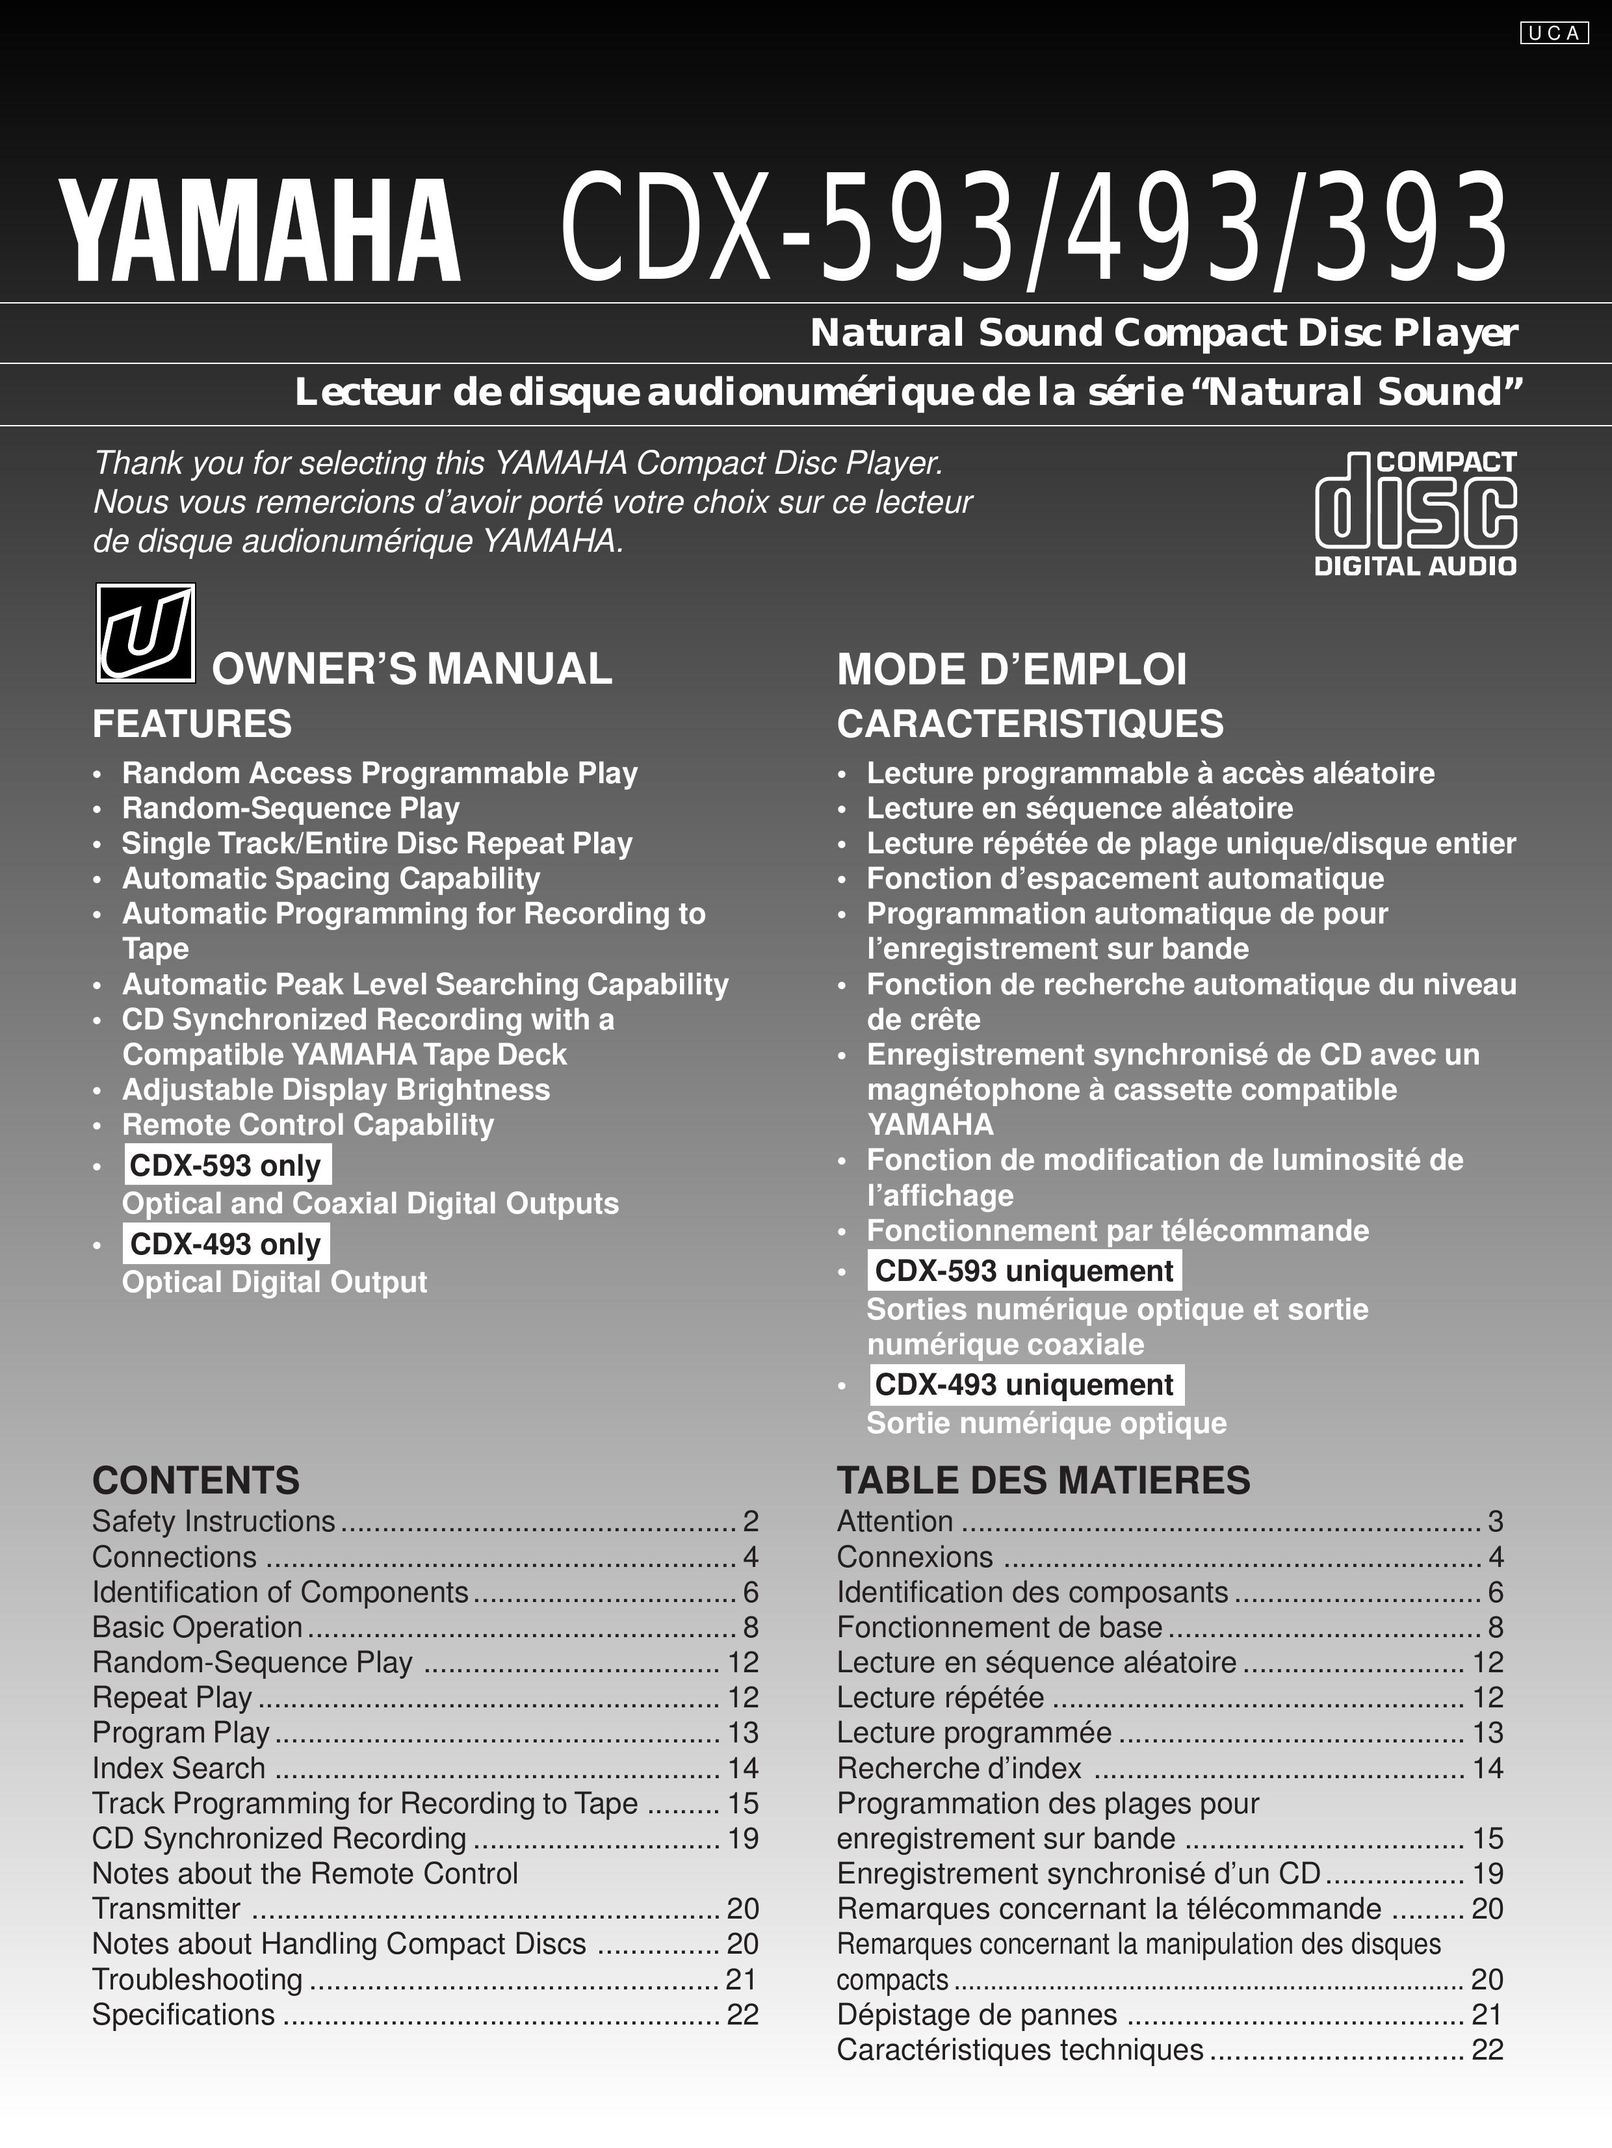 Yamaha CDX-493 CD Player User Manual